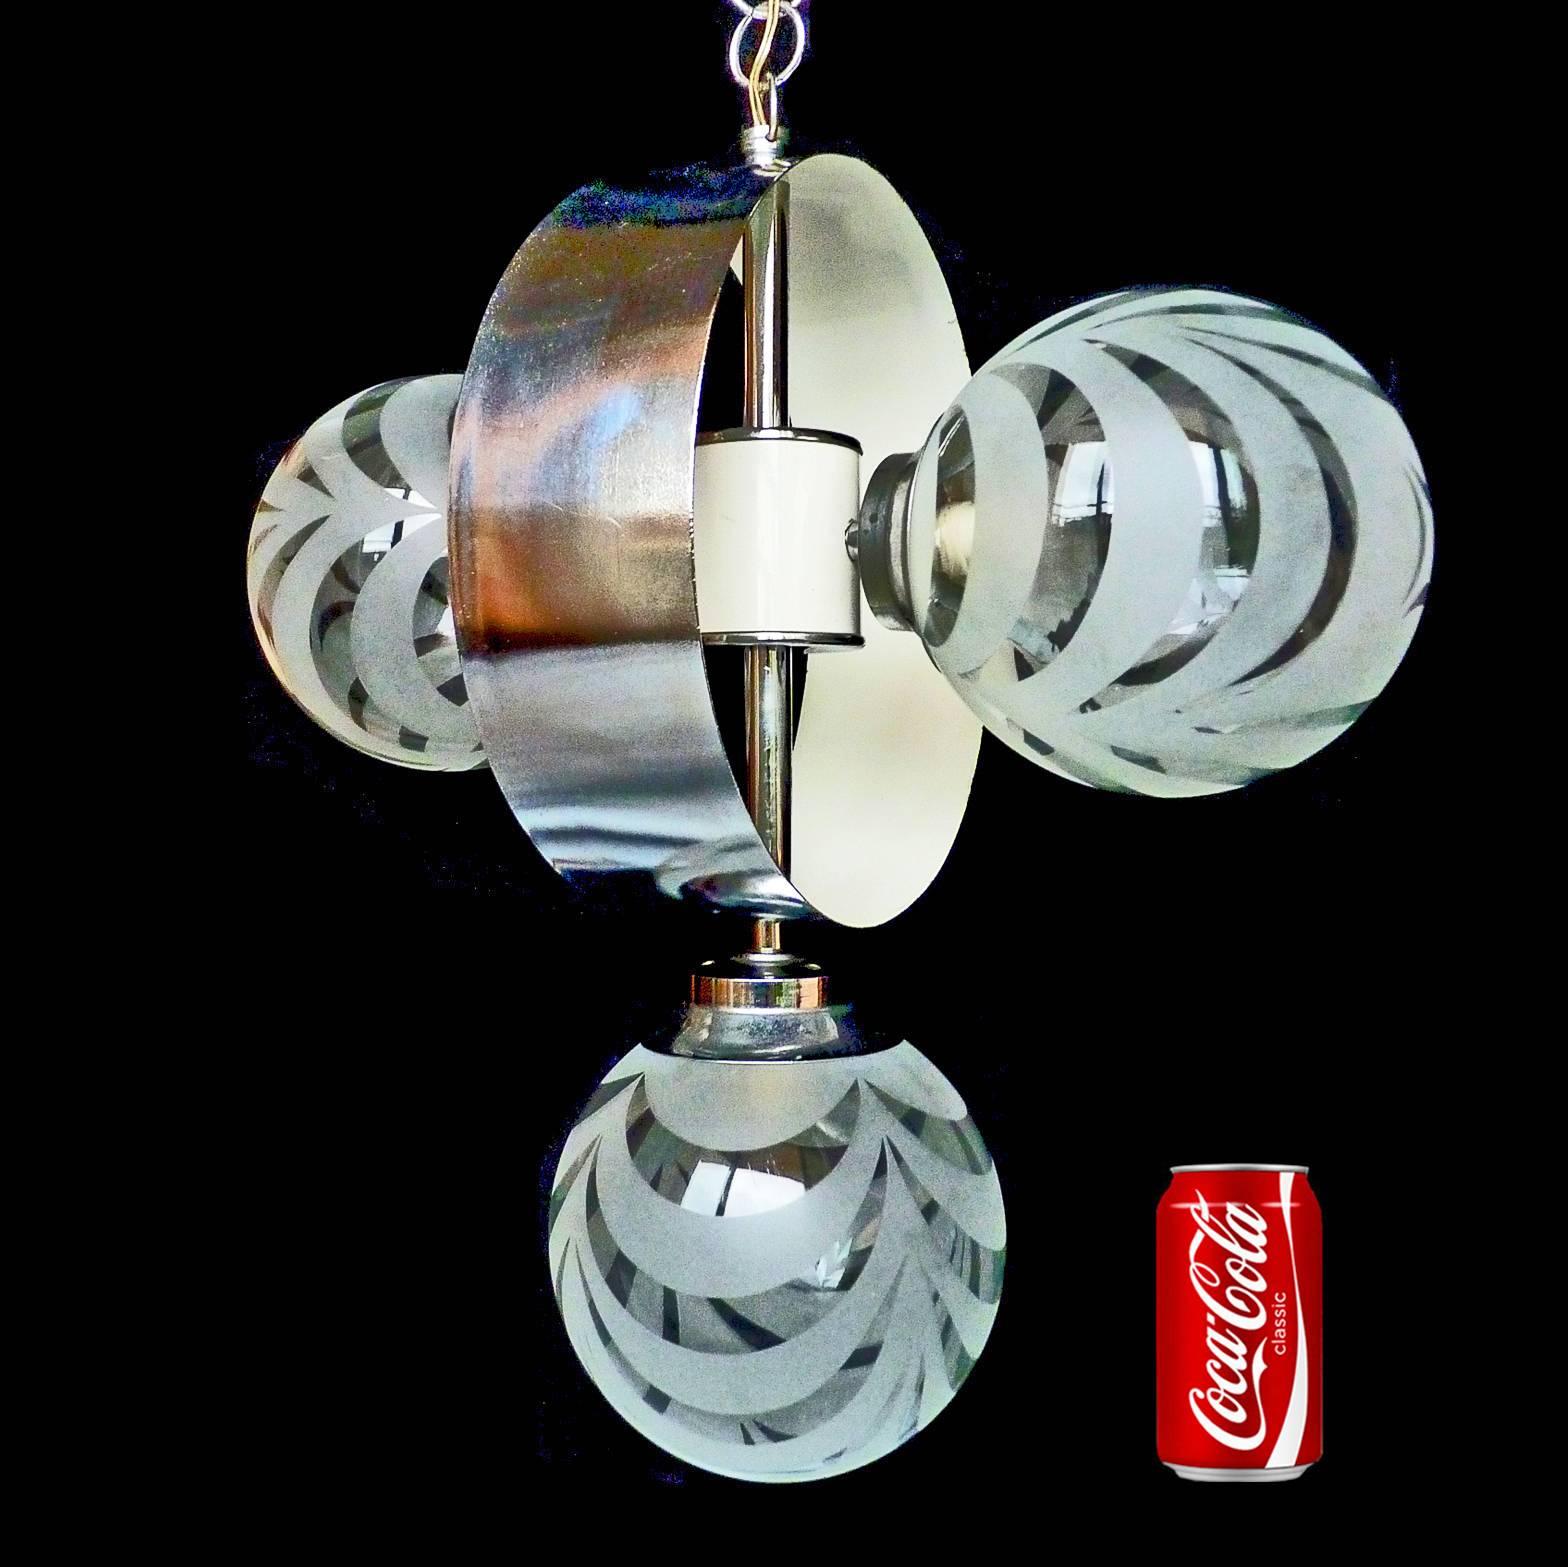 Vintage midcentury Italian chrome atomic Space Age Sputnik orbit chandelier
Measures:
Diameter 17 in / 44 cm
Height 33 in (16, 5